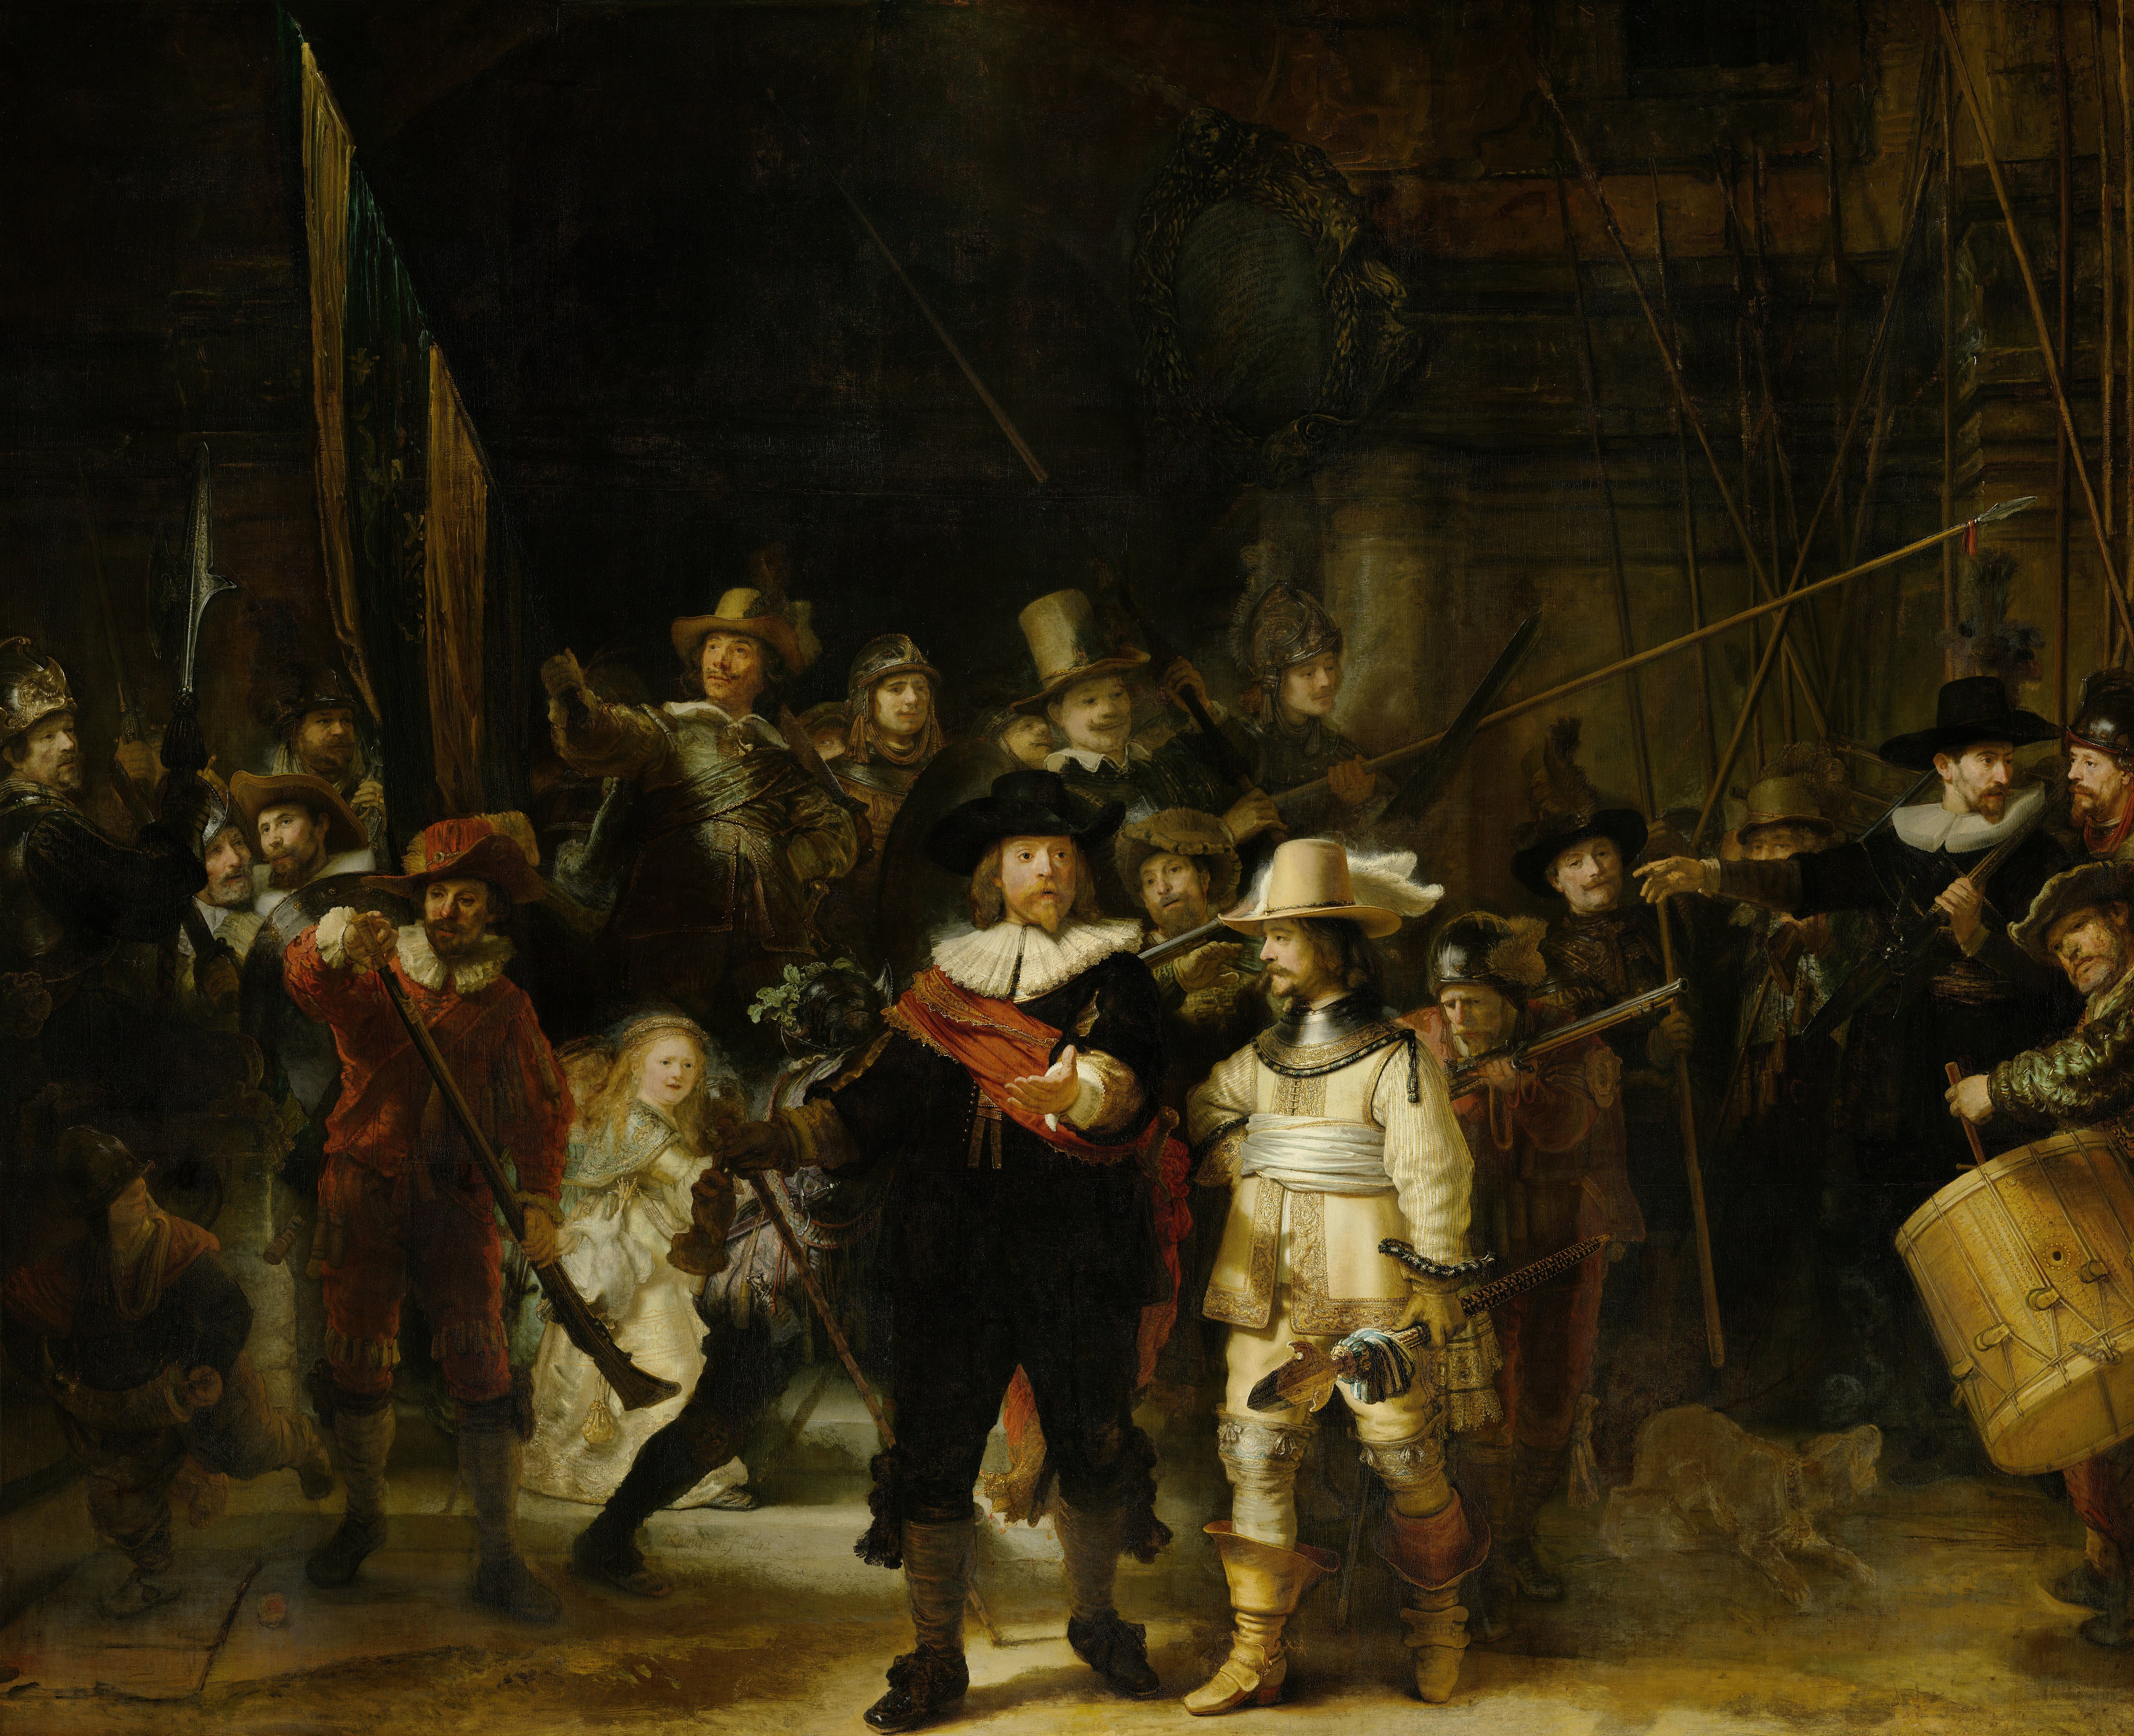 Nighwatch by Rembrandt